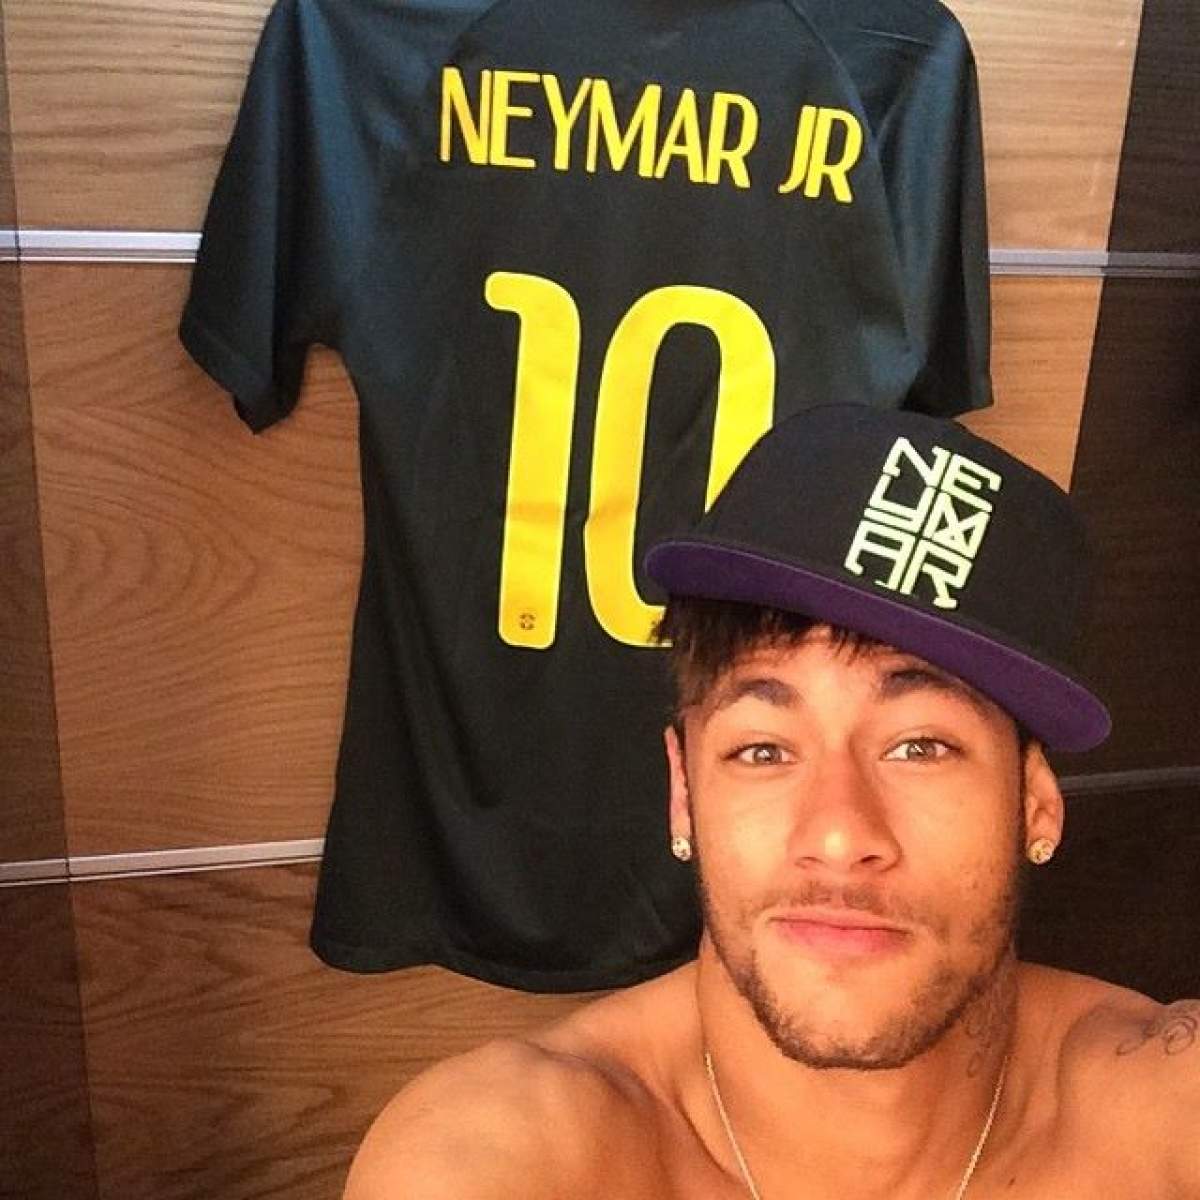 Ghete personalizate pentru talentatul Neymar! Fotbalistul va fi precum Speedy Gonzales la meciul din seara aceasta!